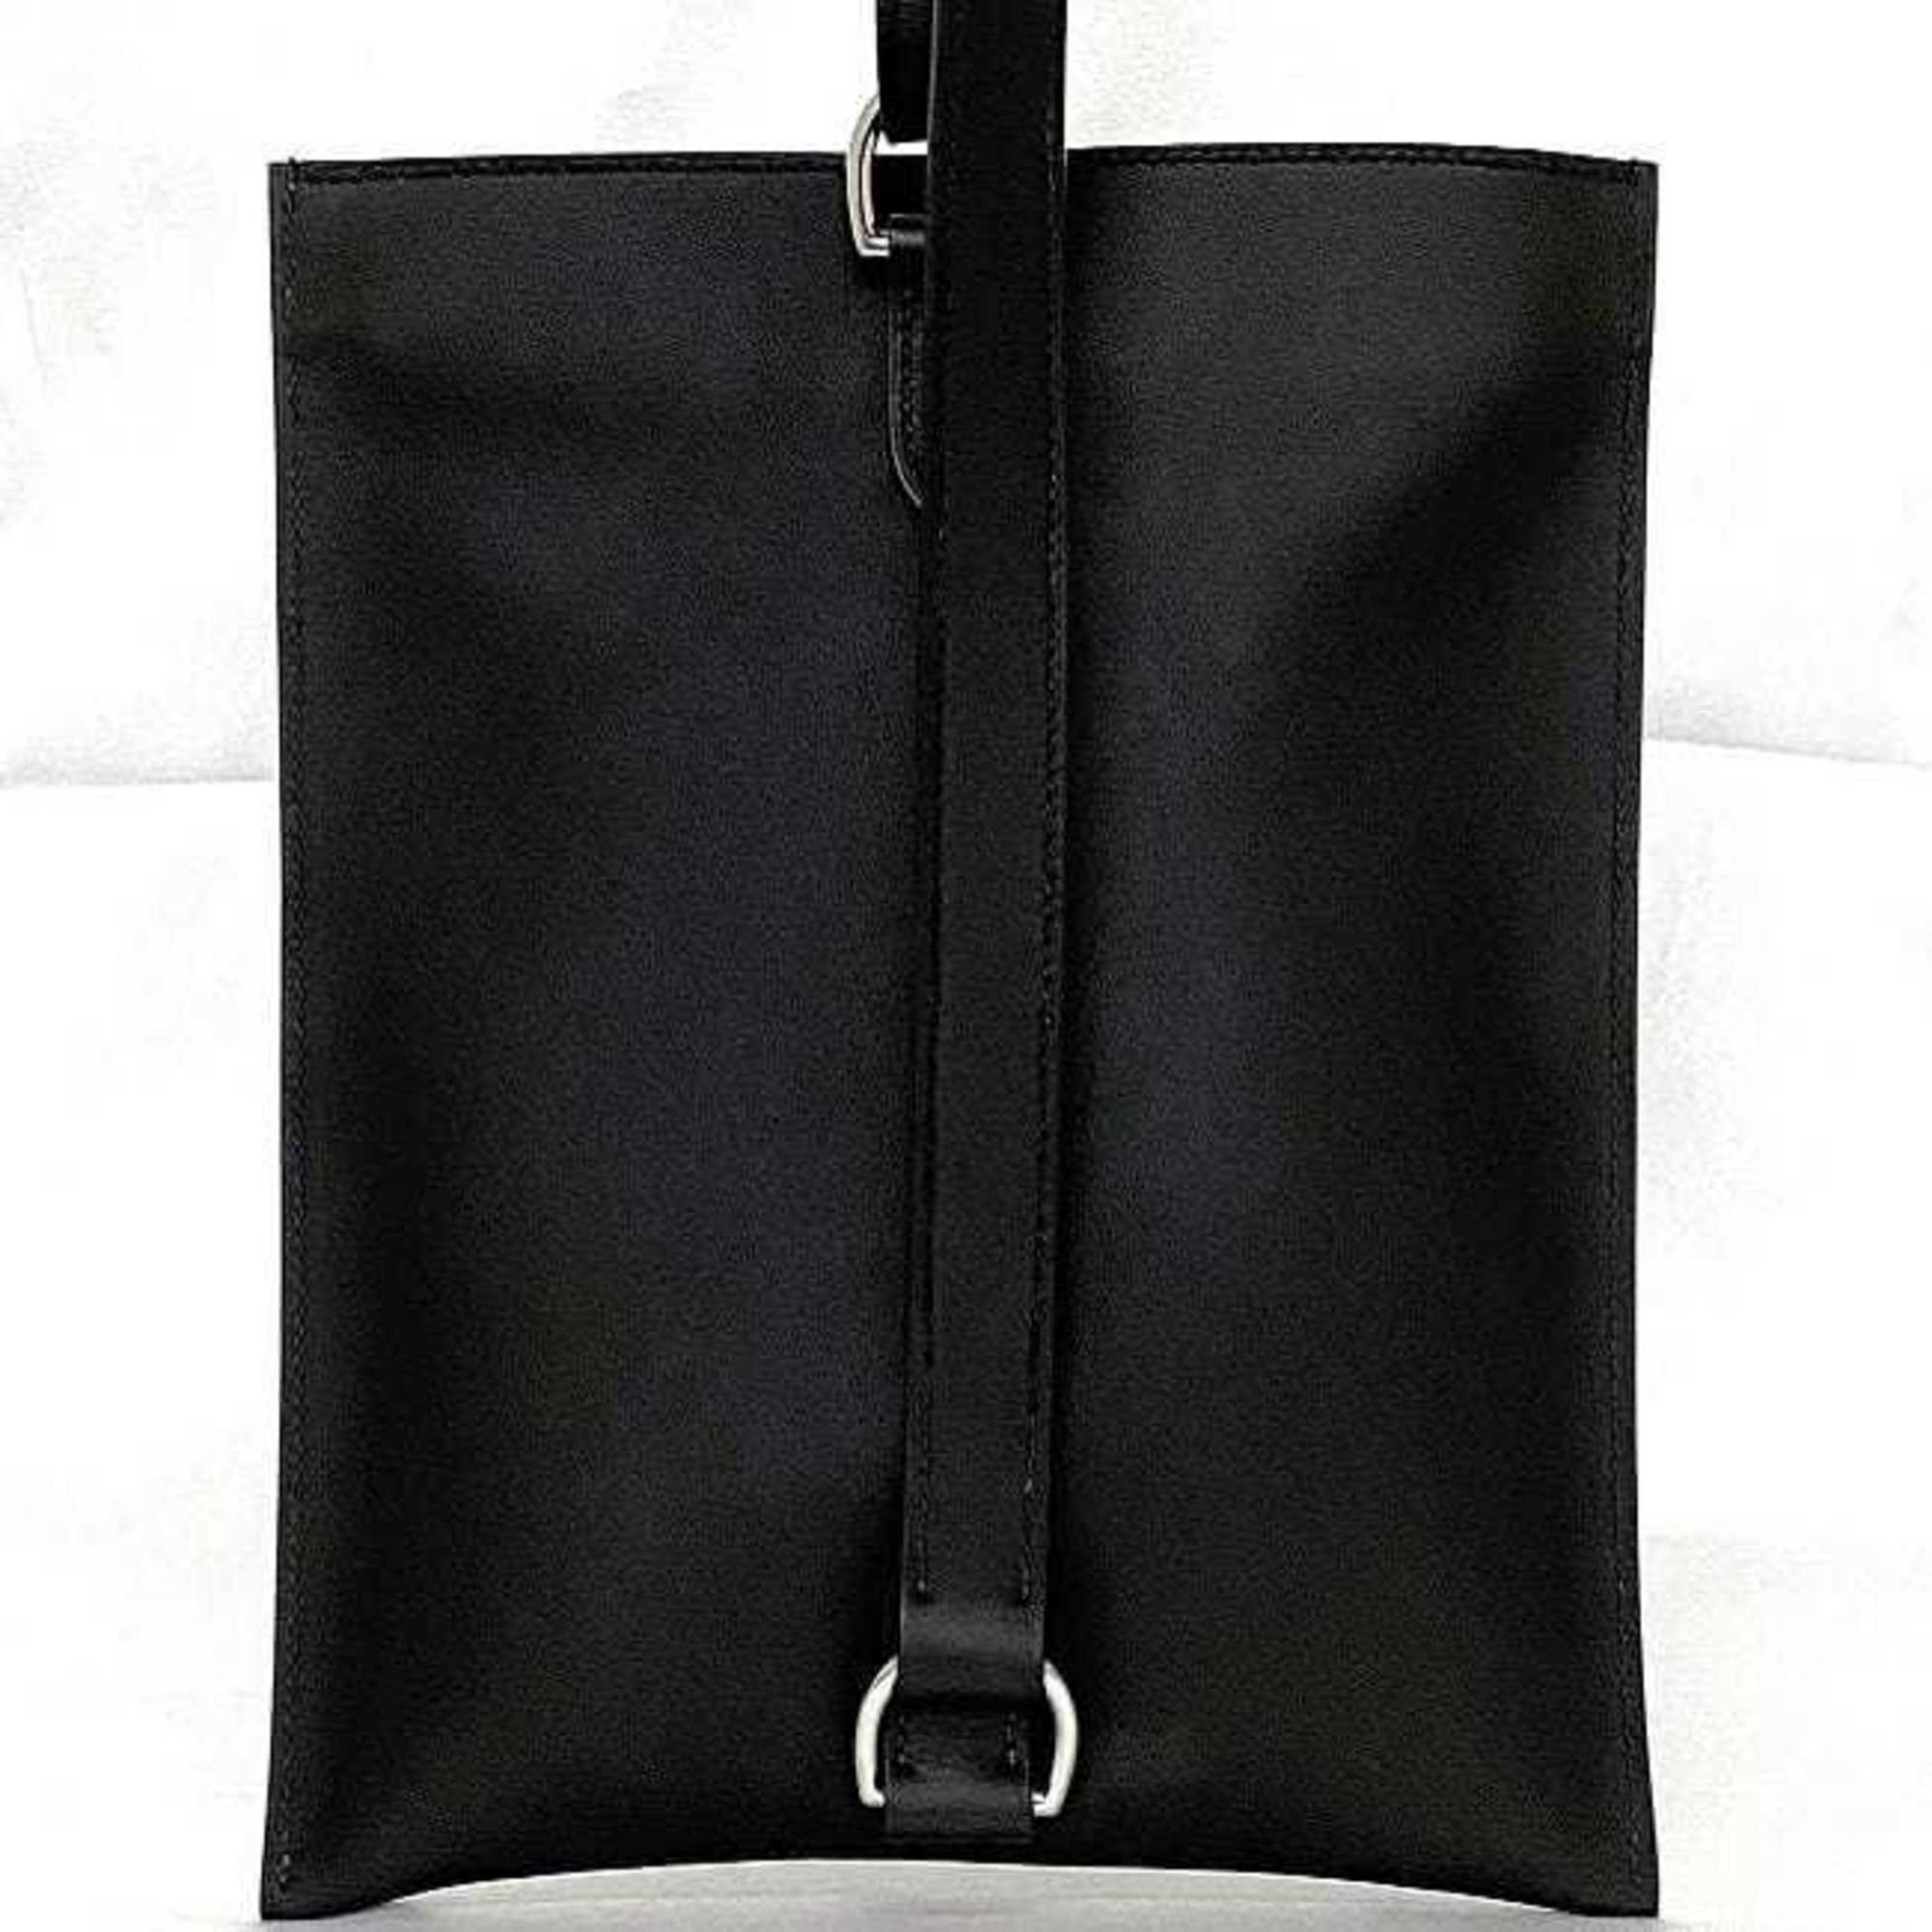 Hermes Body Bag Portefeuille Pochan Plus Black Chaine d'Ancre f-20172 Shoulder Leather Swift U Stamp HERMES Unisex